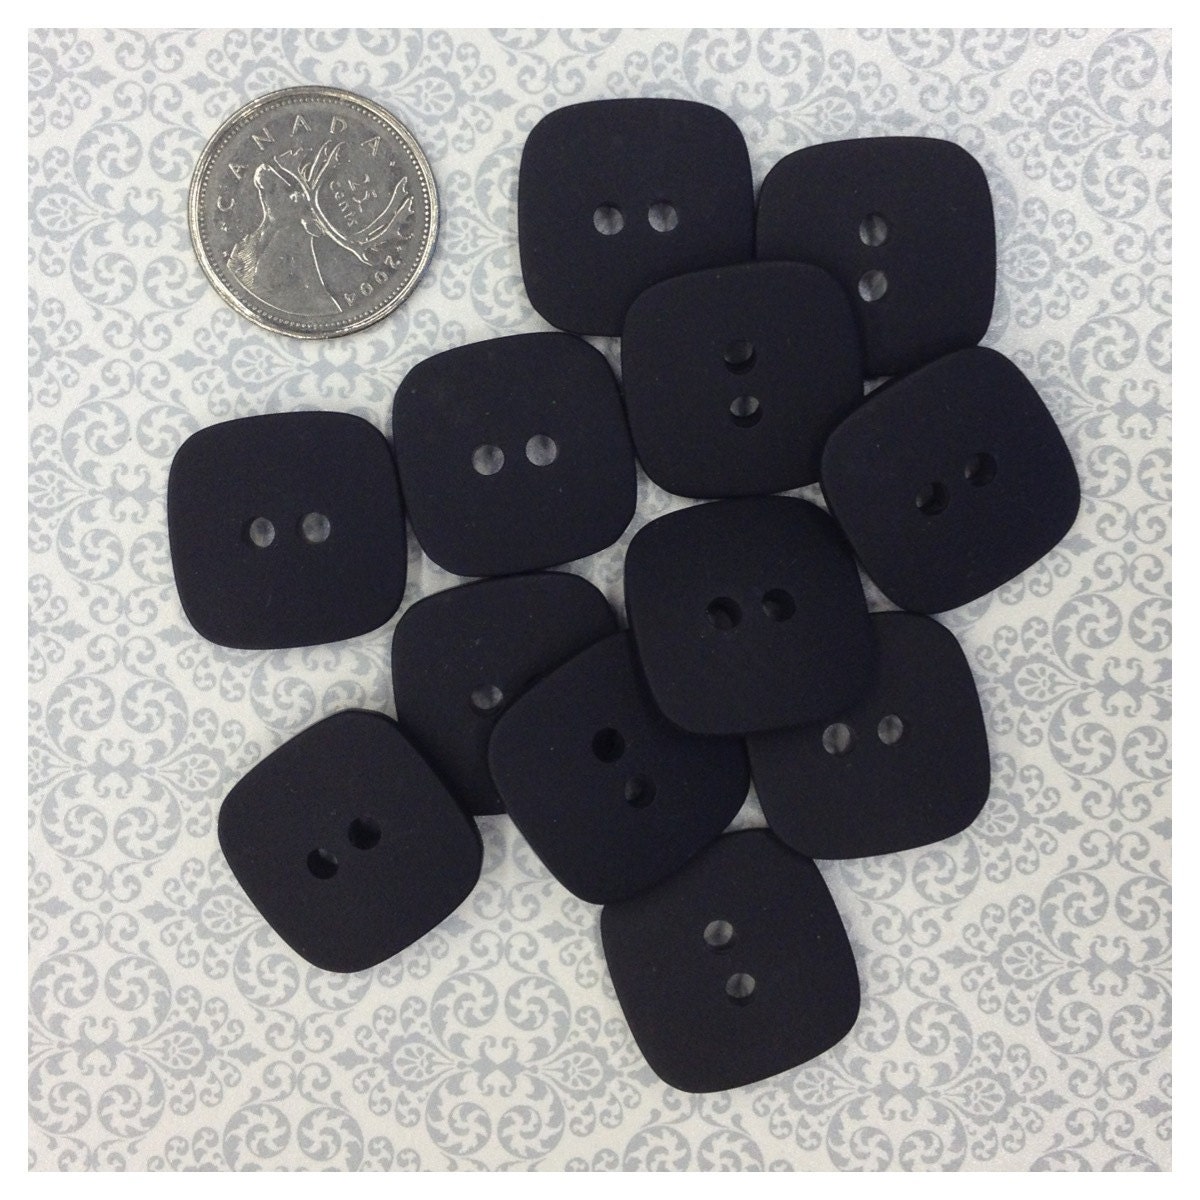 Unique Black Buttons 